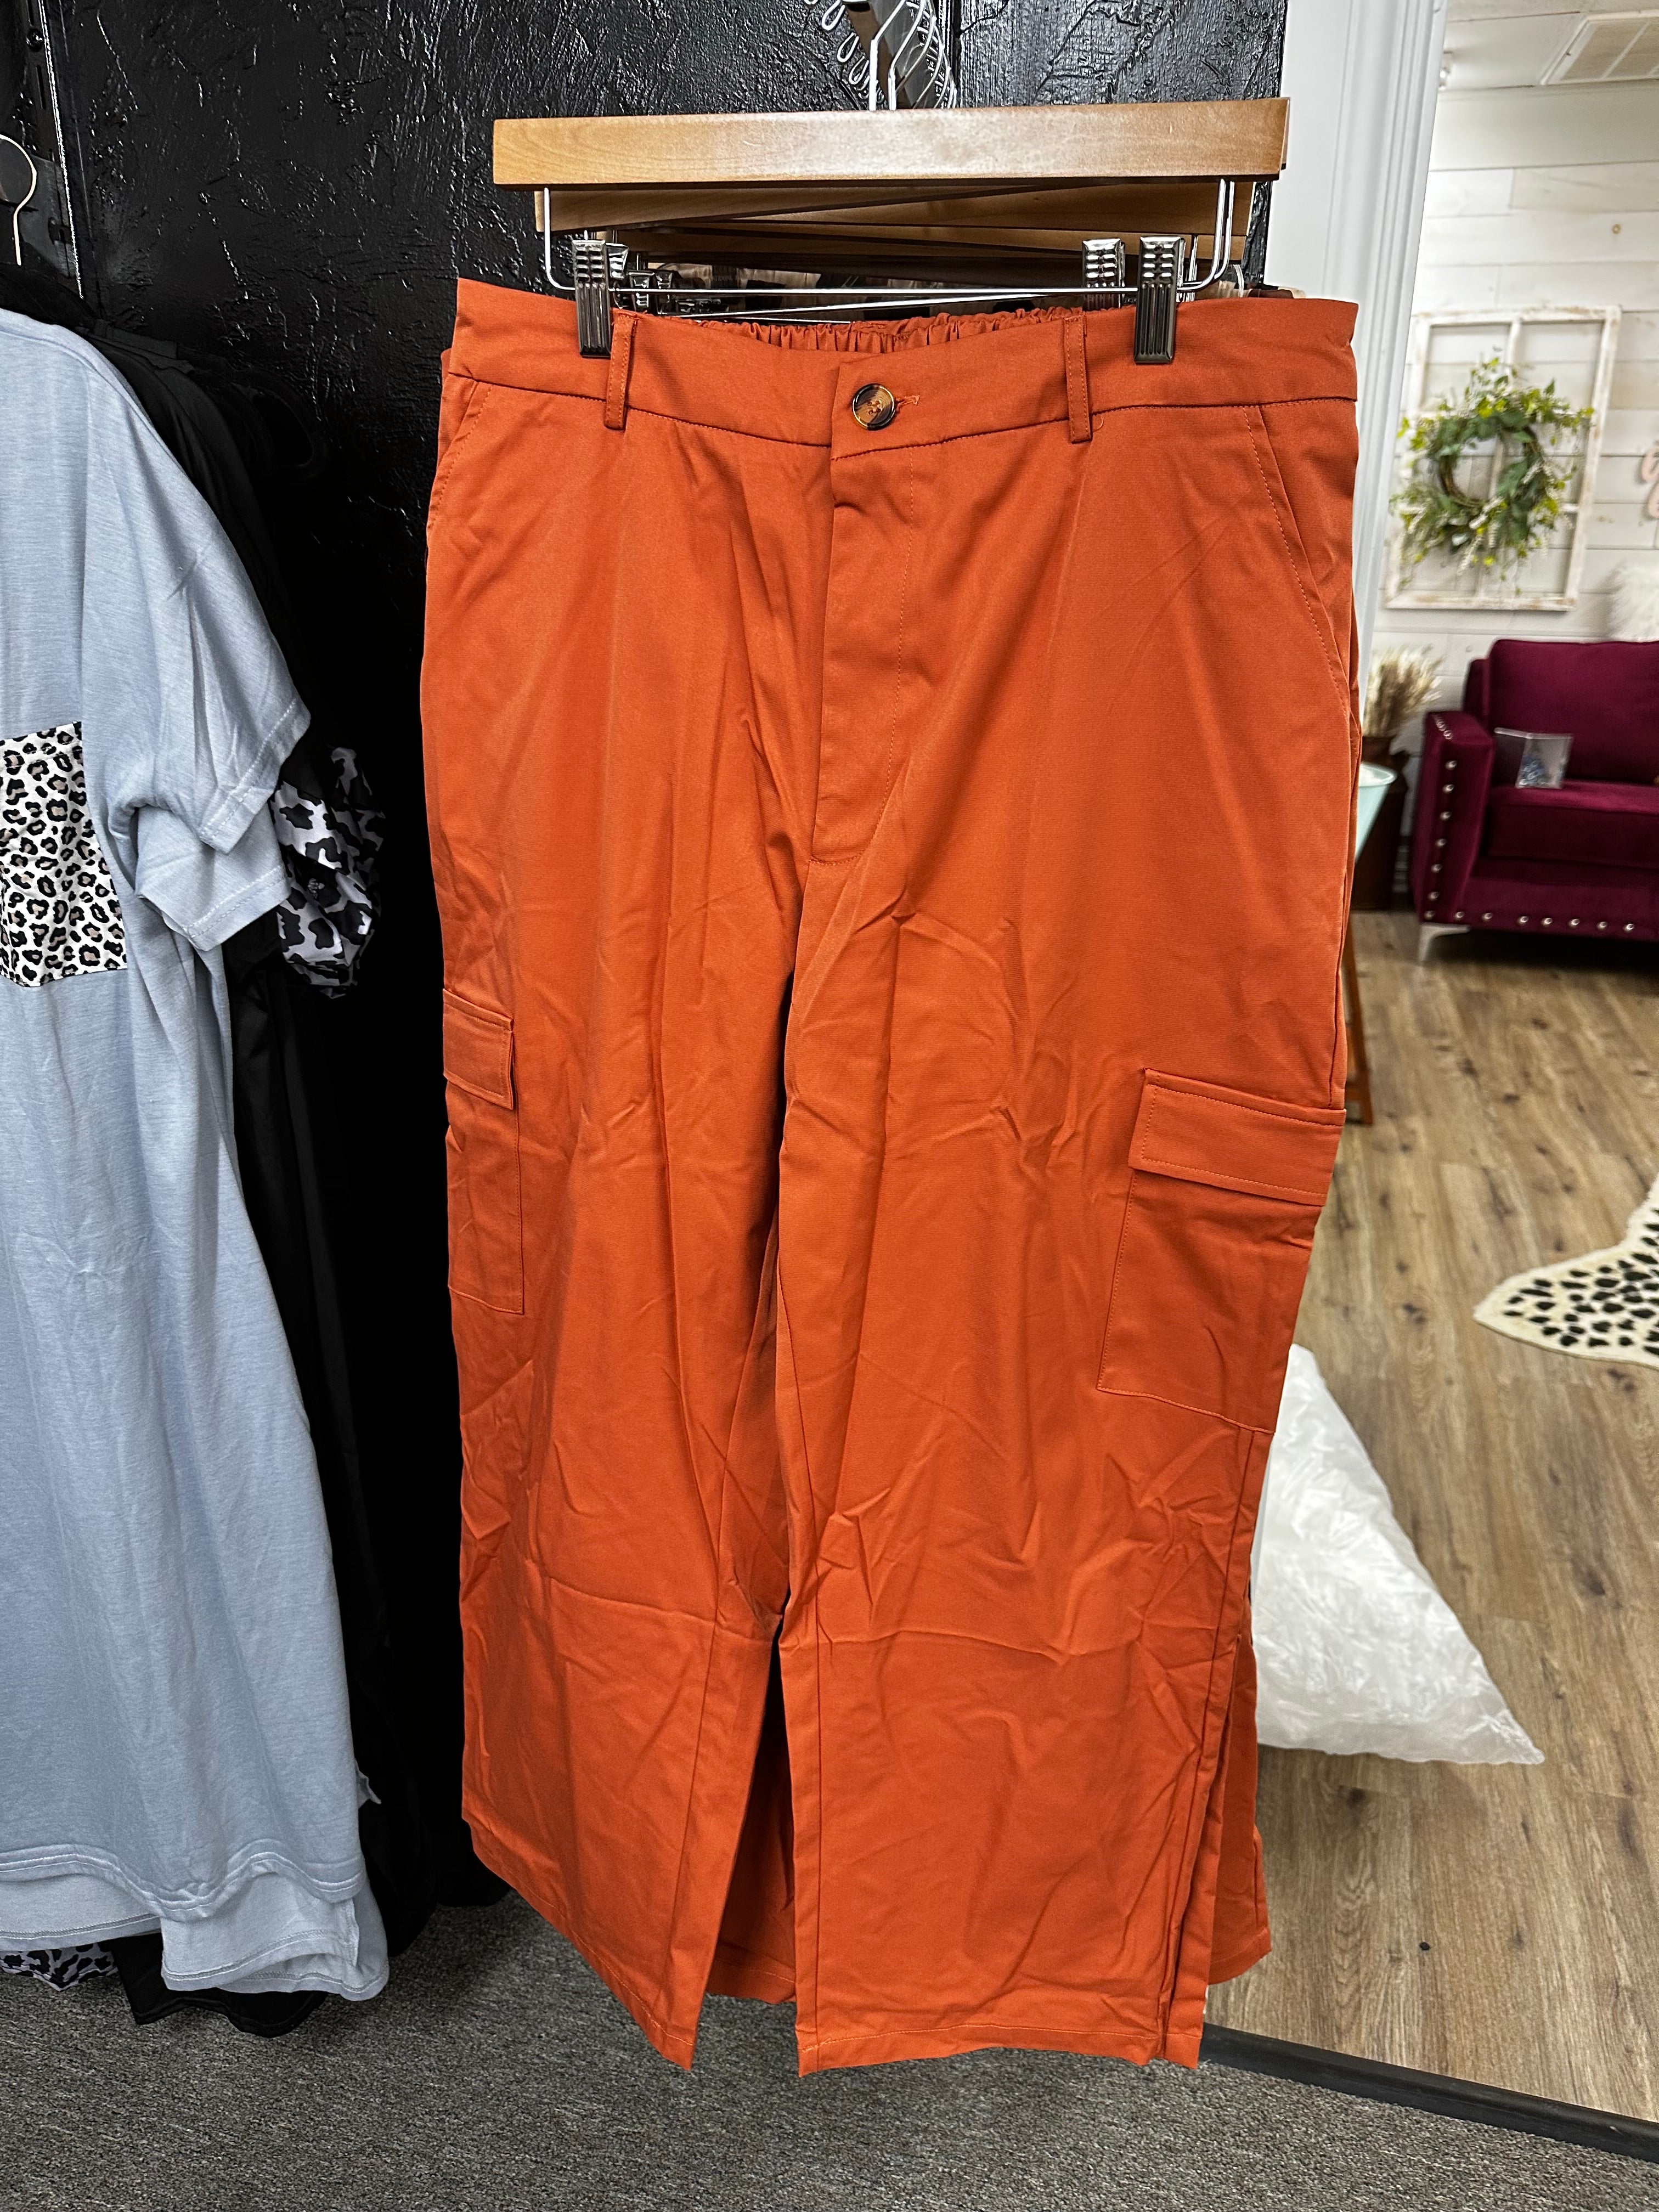 Curvy cargo pants- orange